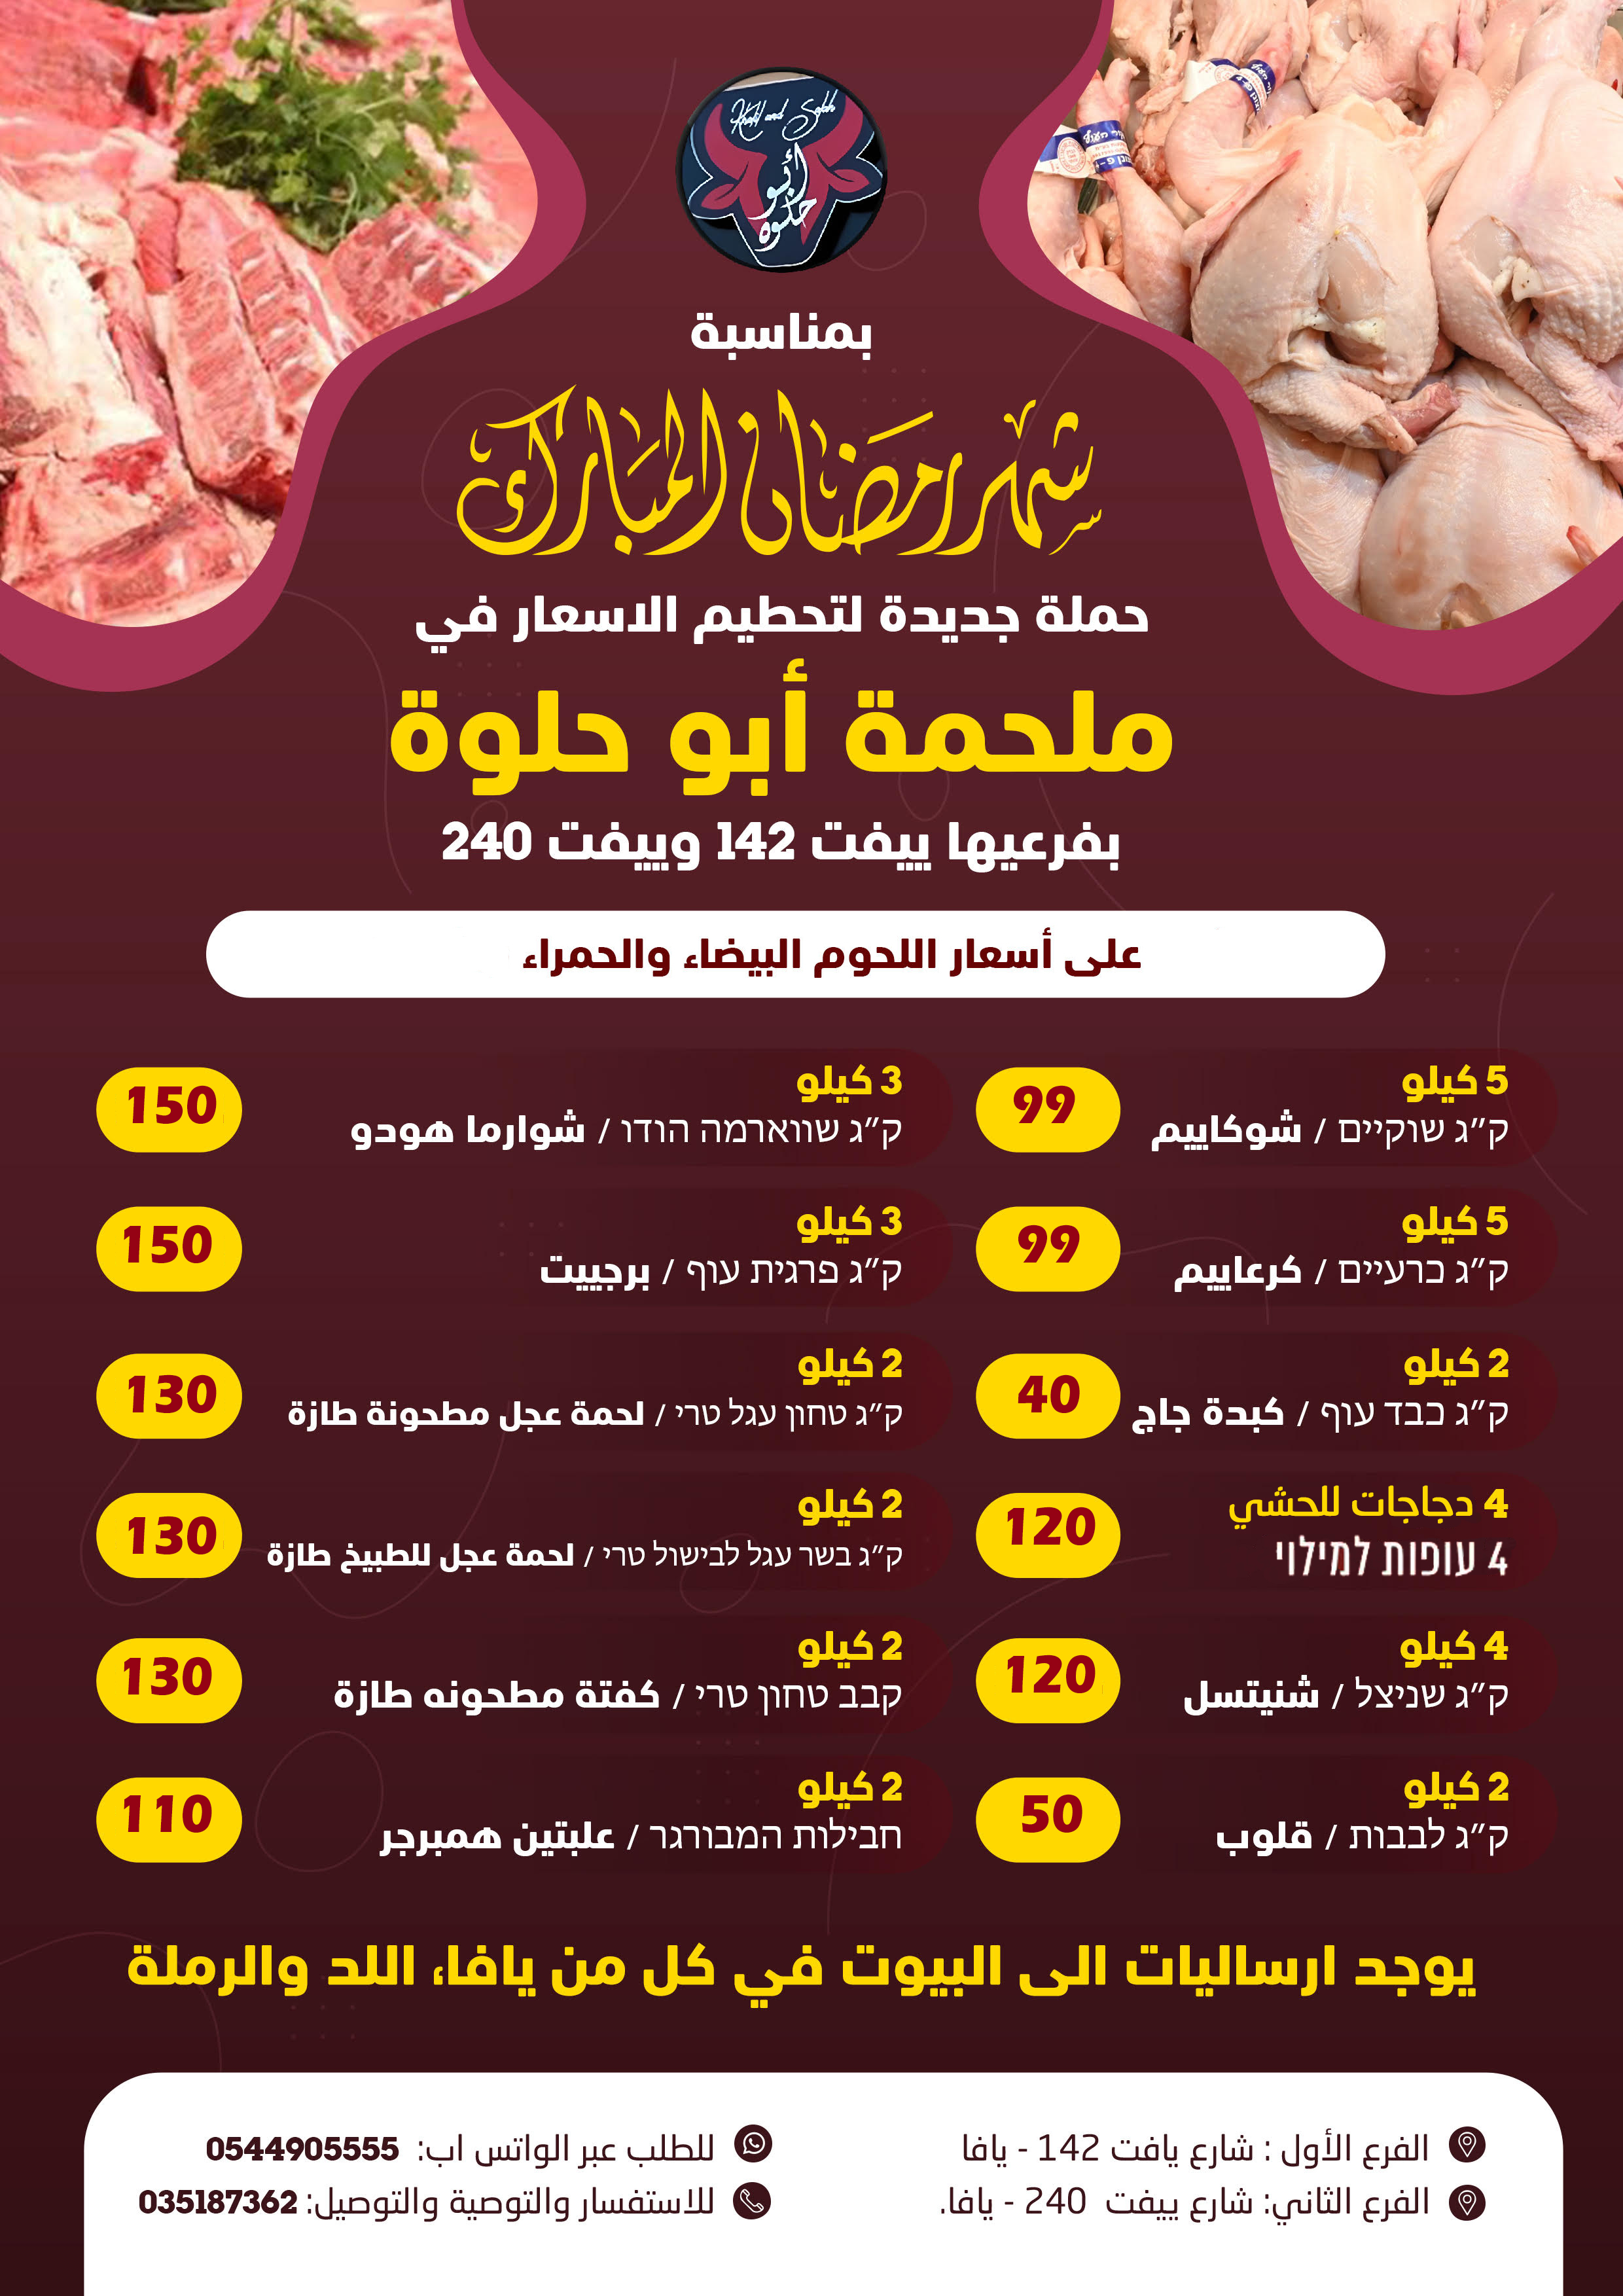  يافا: حملة جديدة على الأسعار لدى ملحمة أبو حلوة في شهر رمضان 